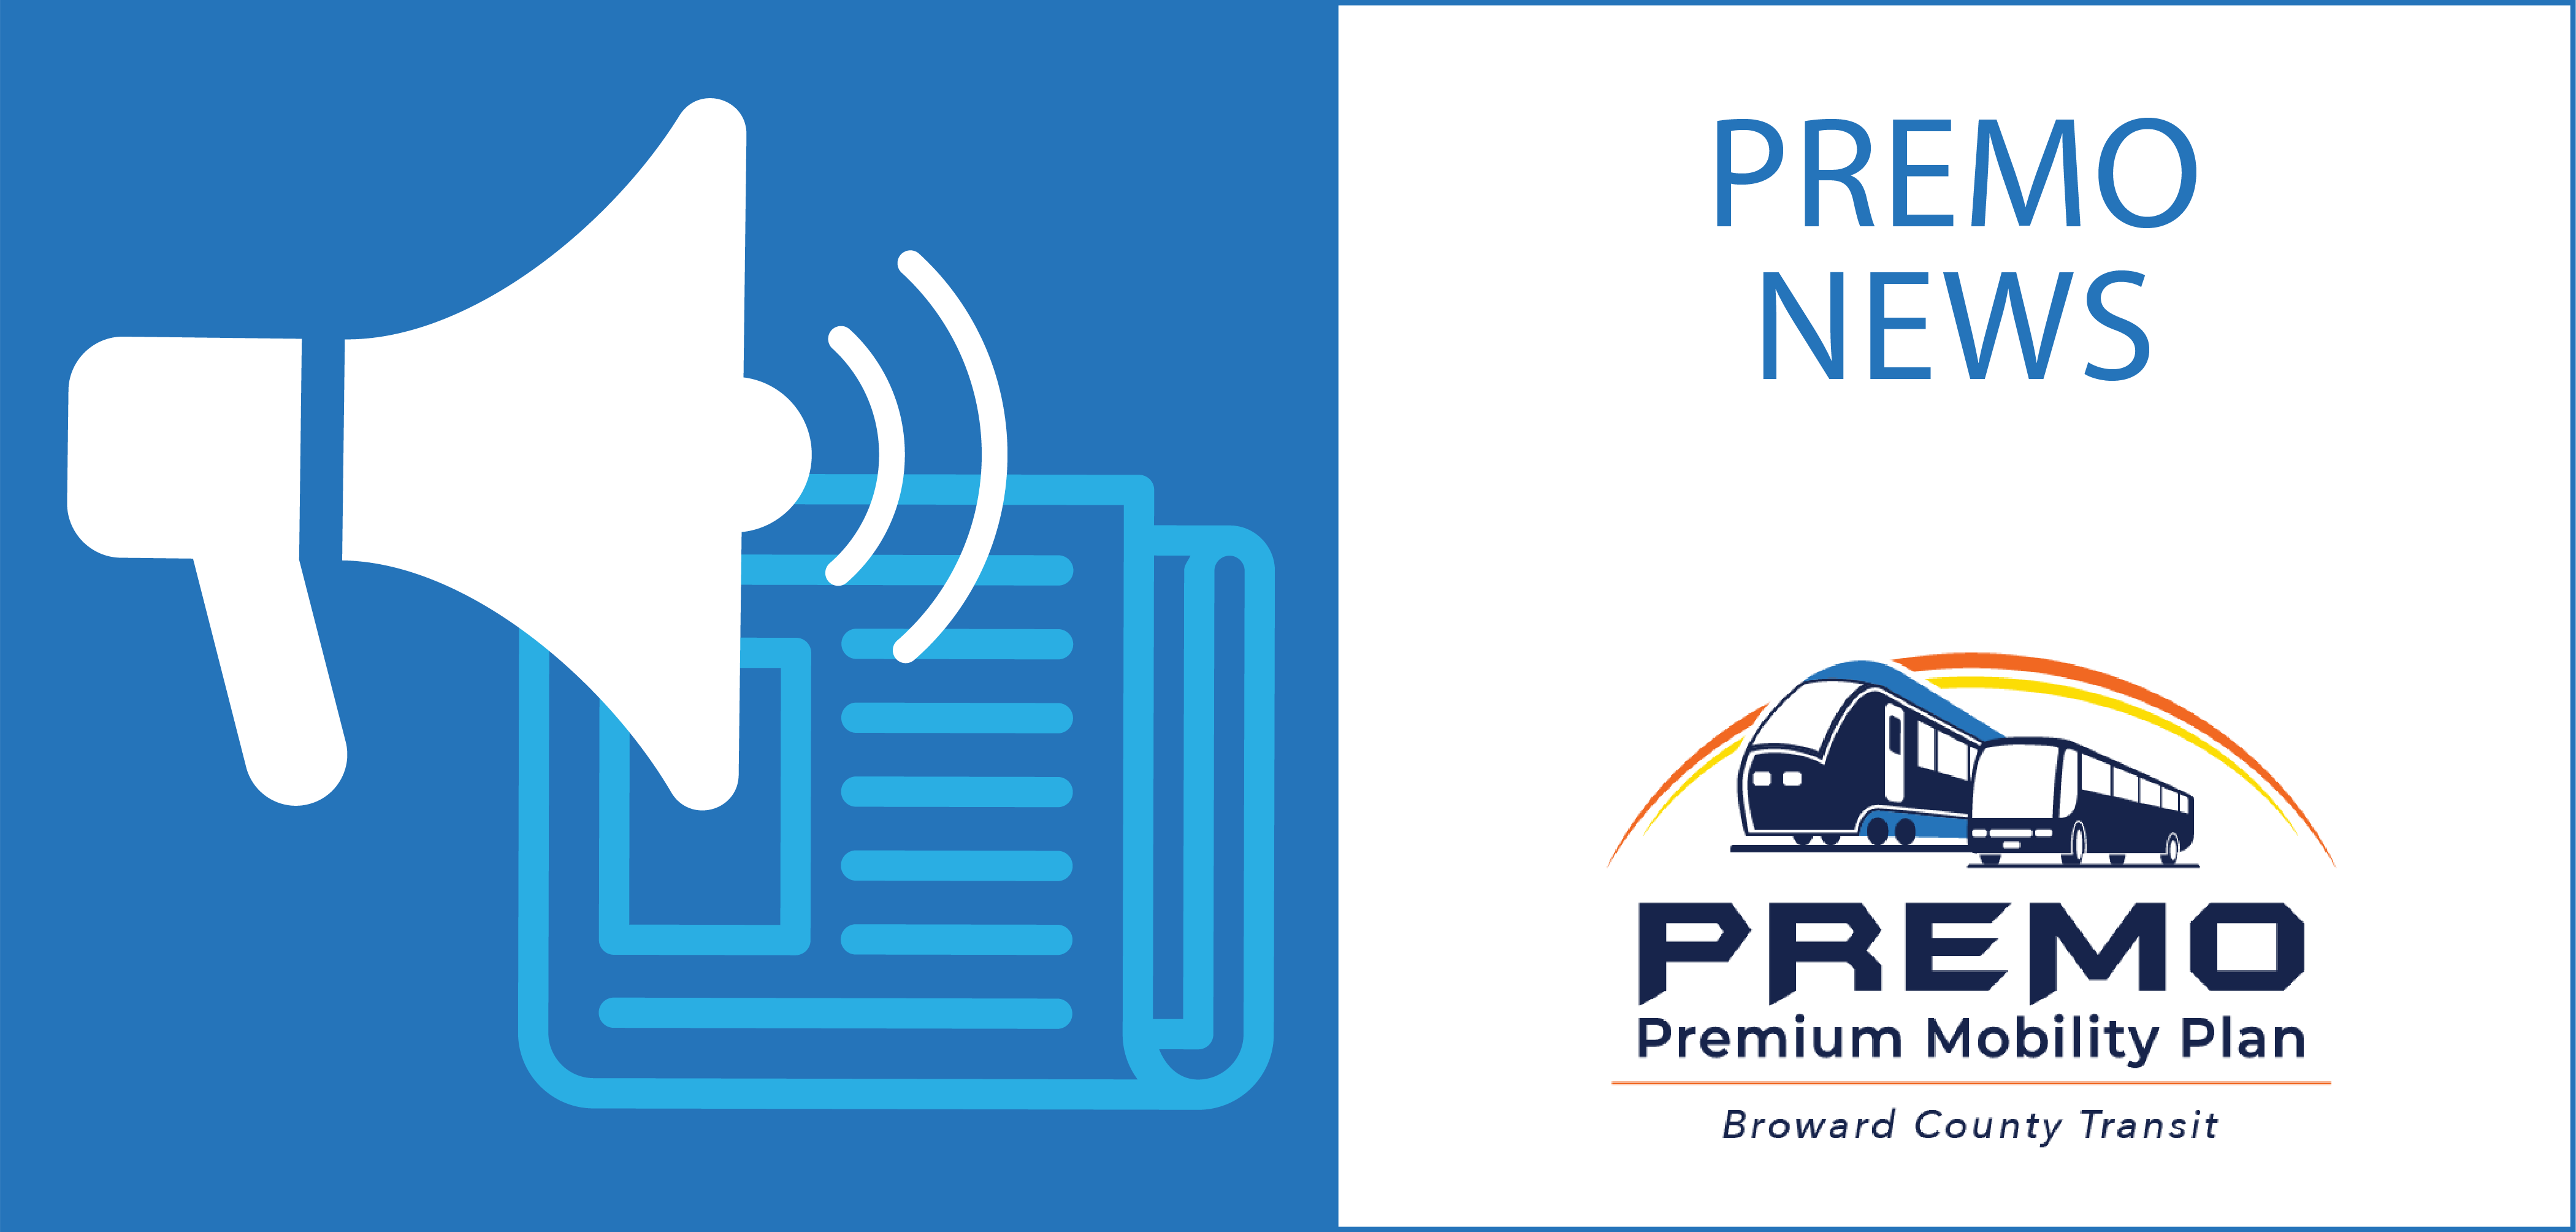 PREMO News